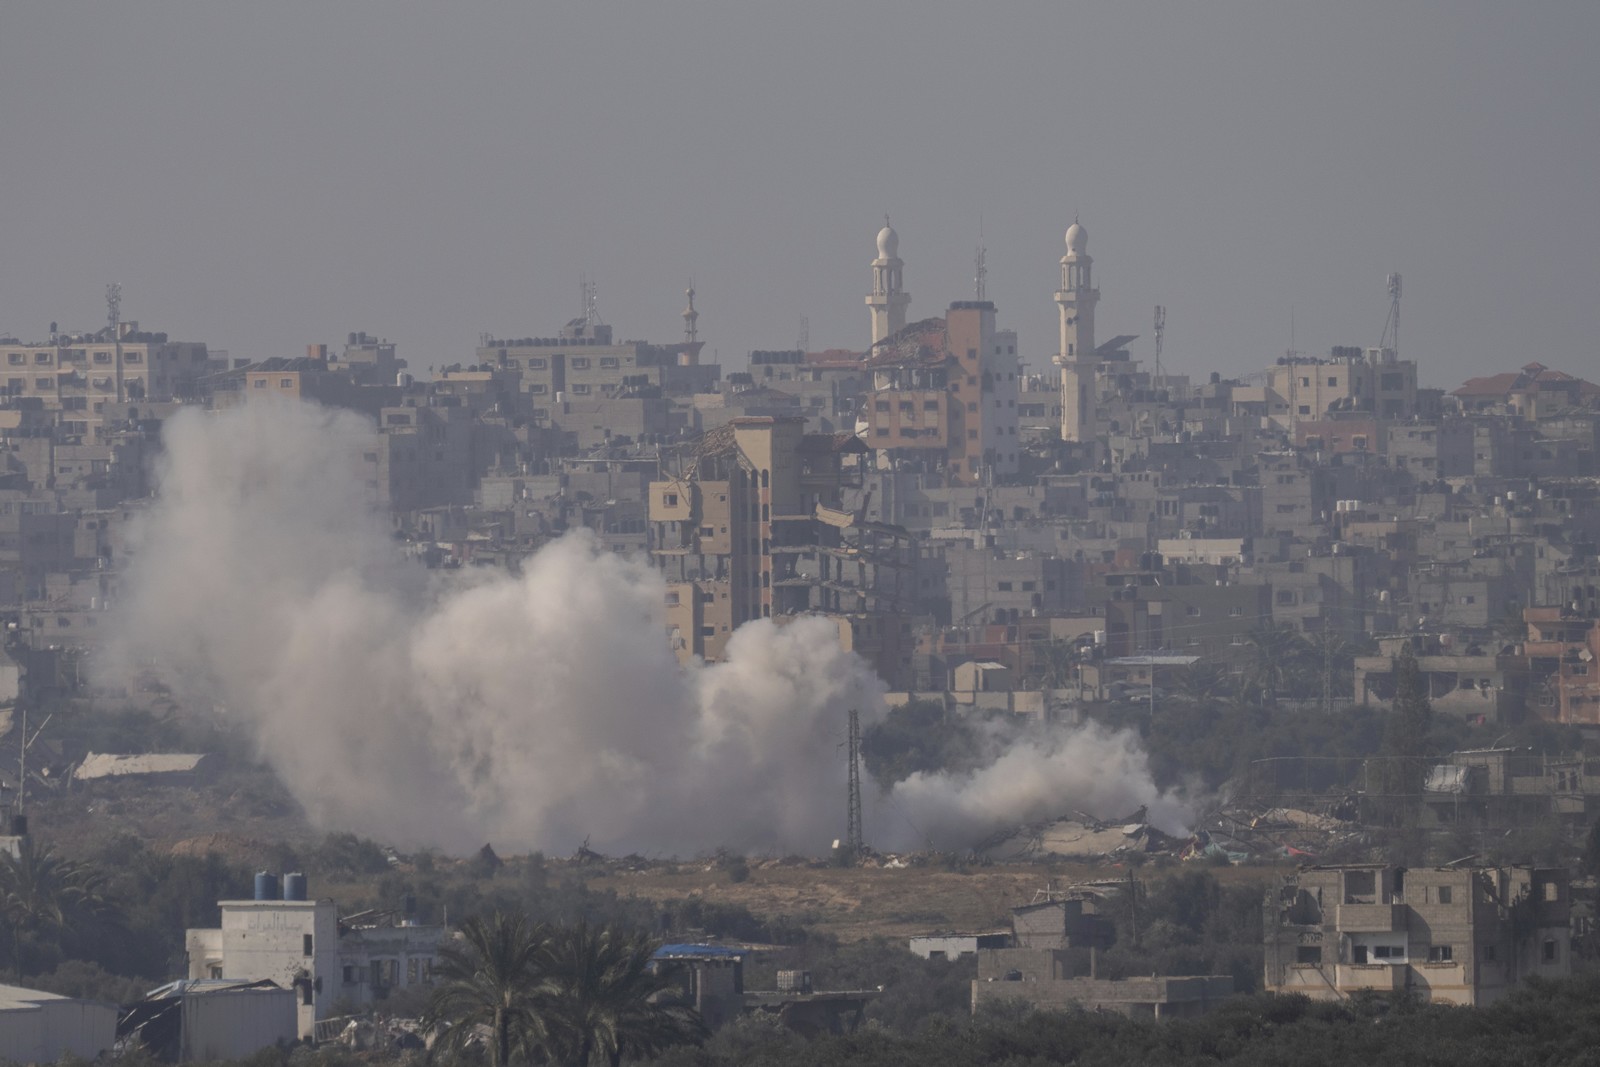 γάζα: δίχως τέλος οι βομβαρδισμοί - διαφωνίες ισραήλ-ηπα για ίδρυση παλαιστινιακού κράτους